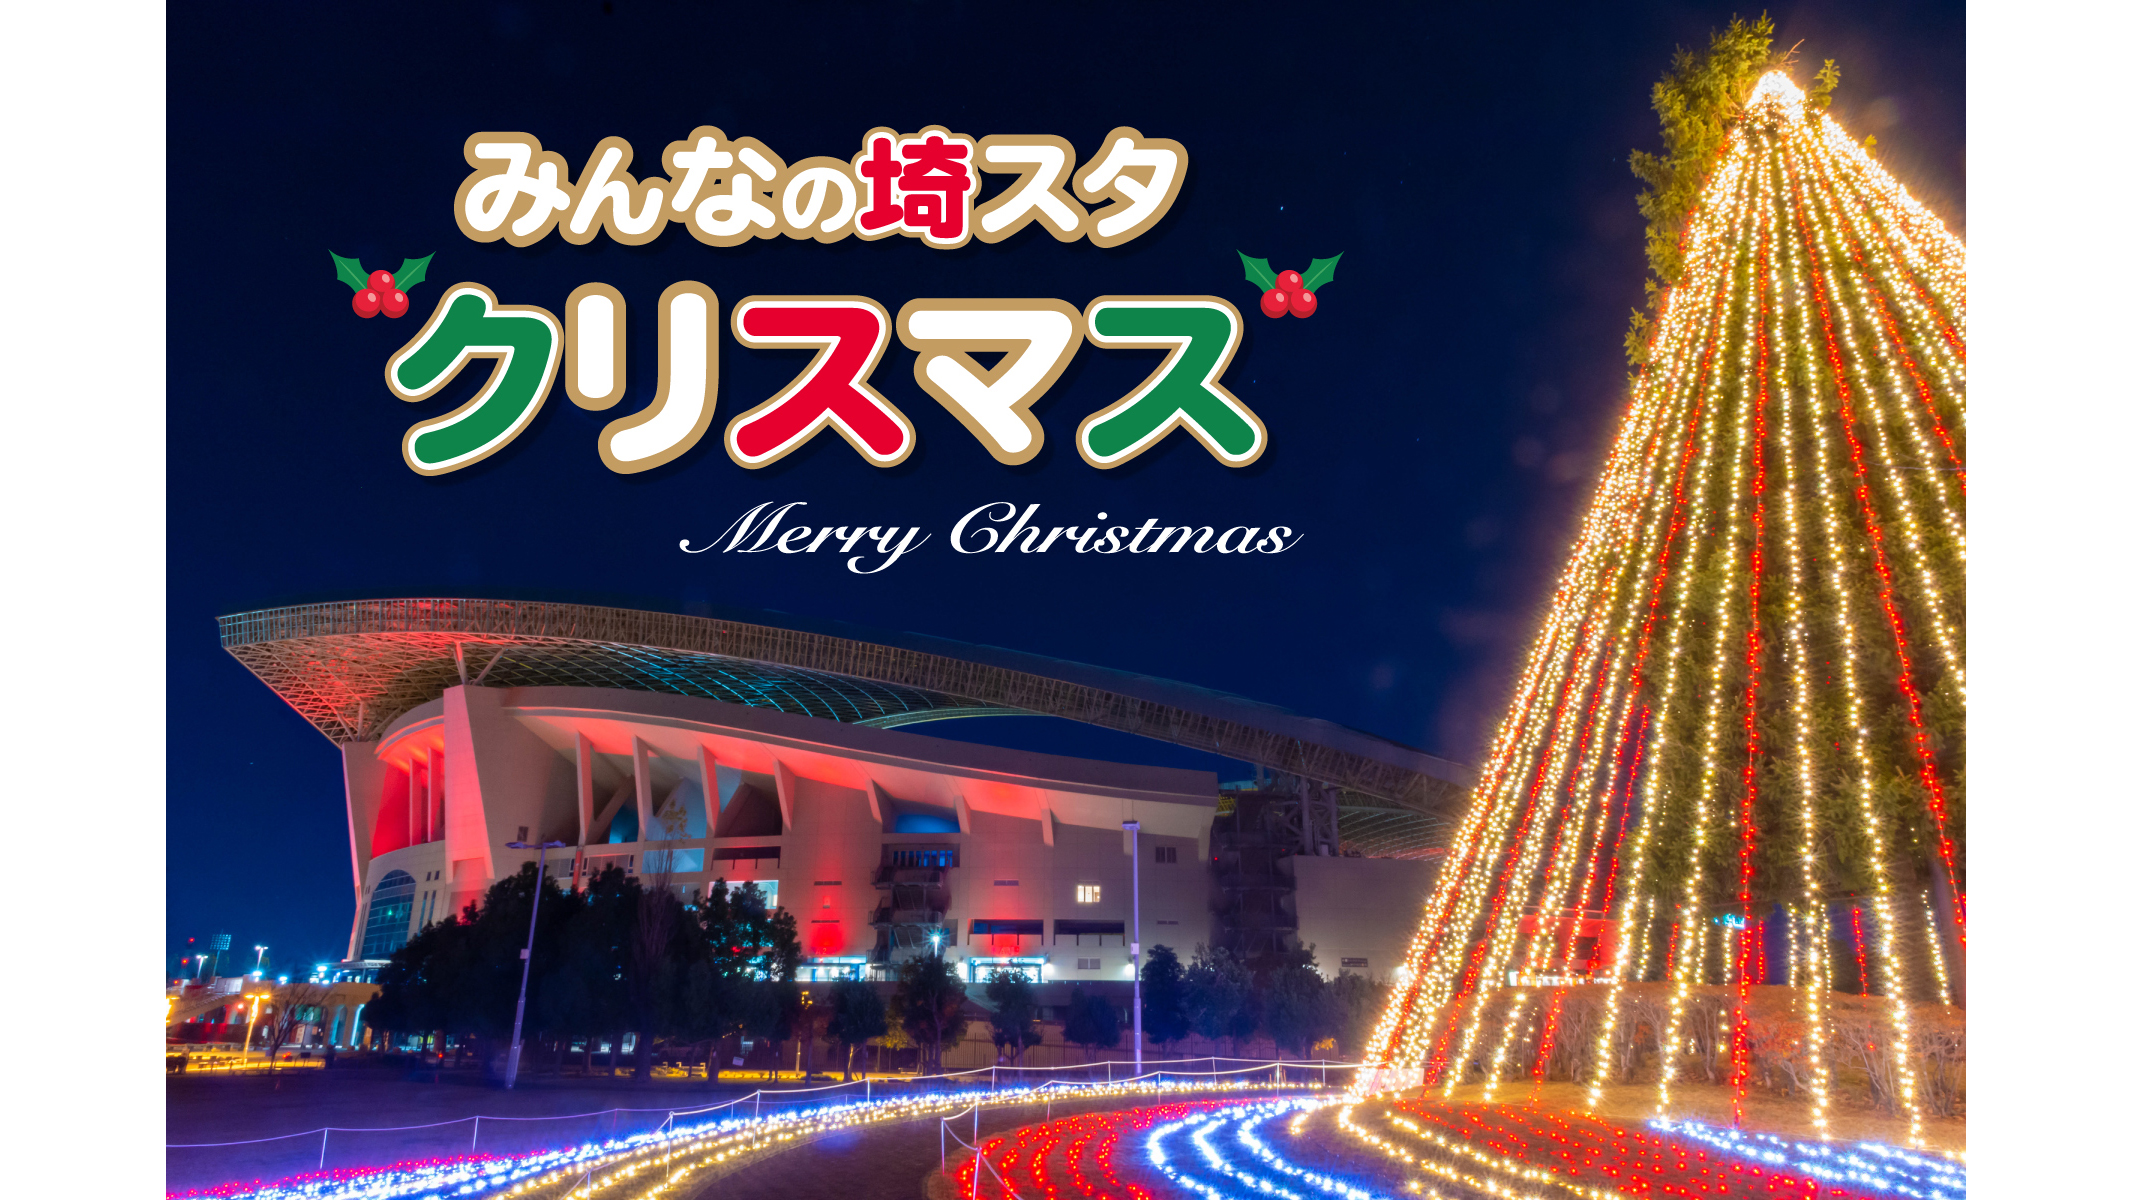 みんなの埼スタクリスマス もみの木広場イルミネーションを実施!(11/17更新)